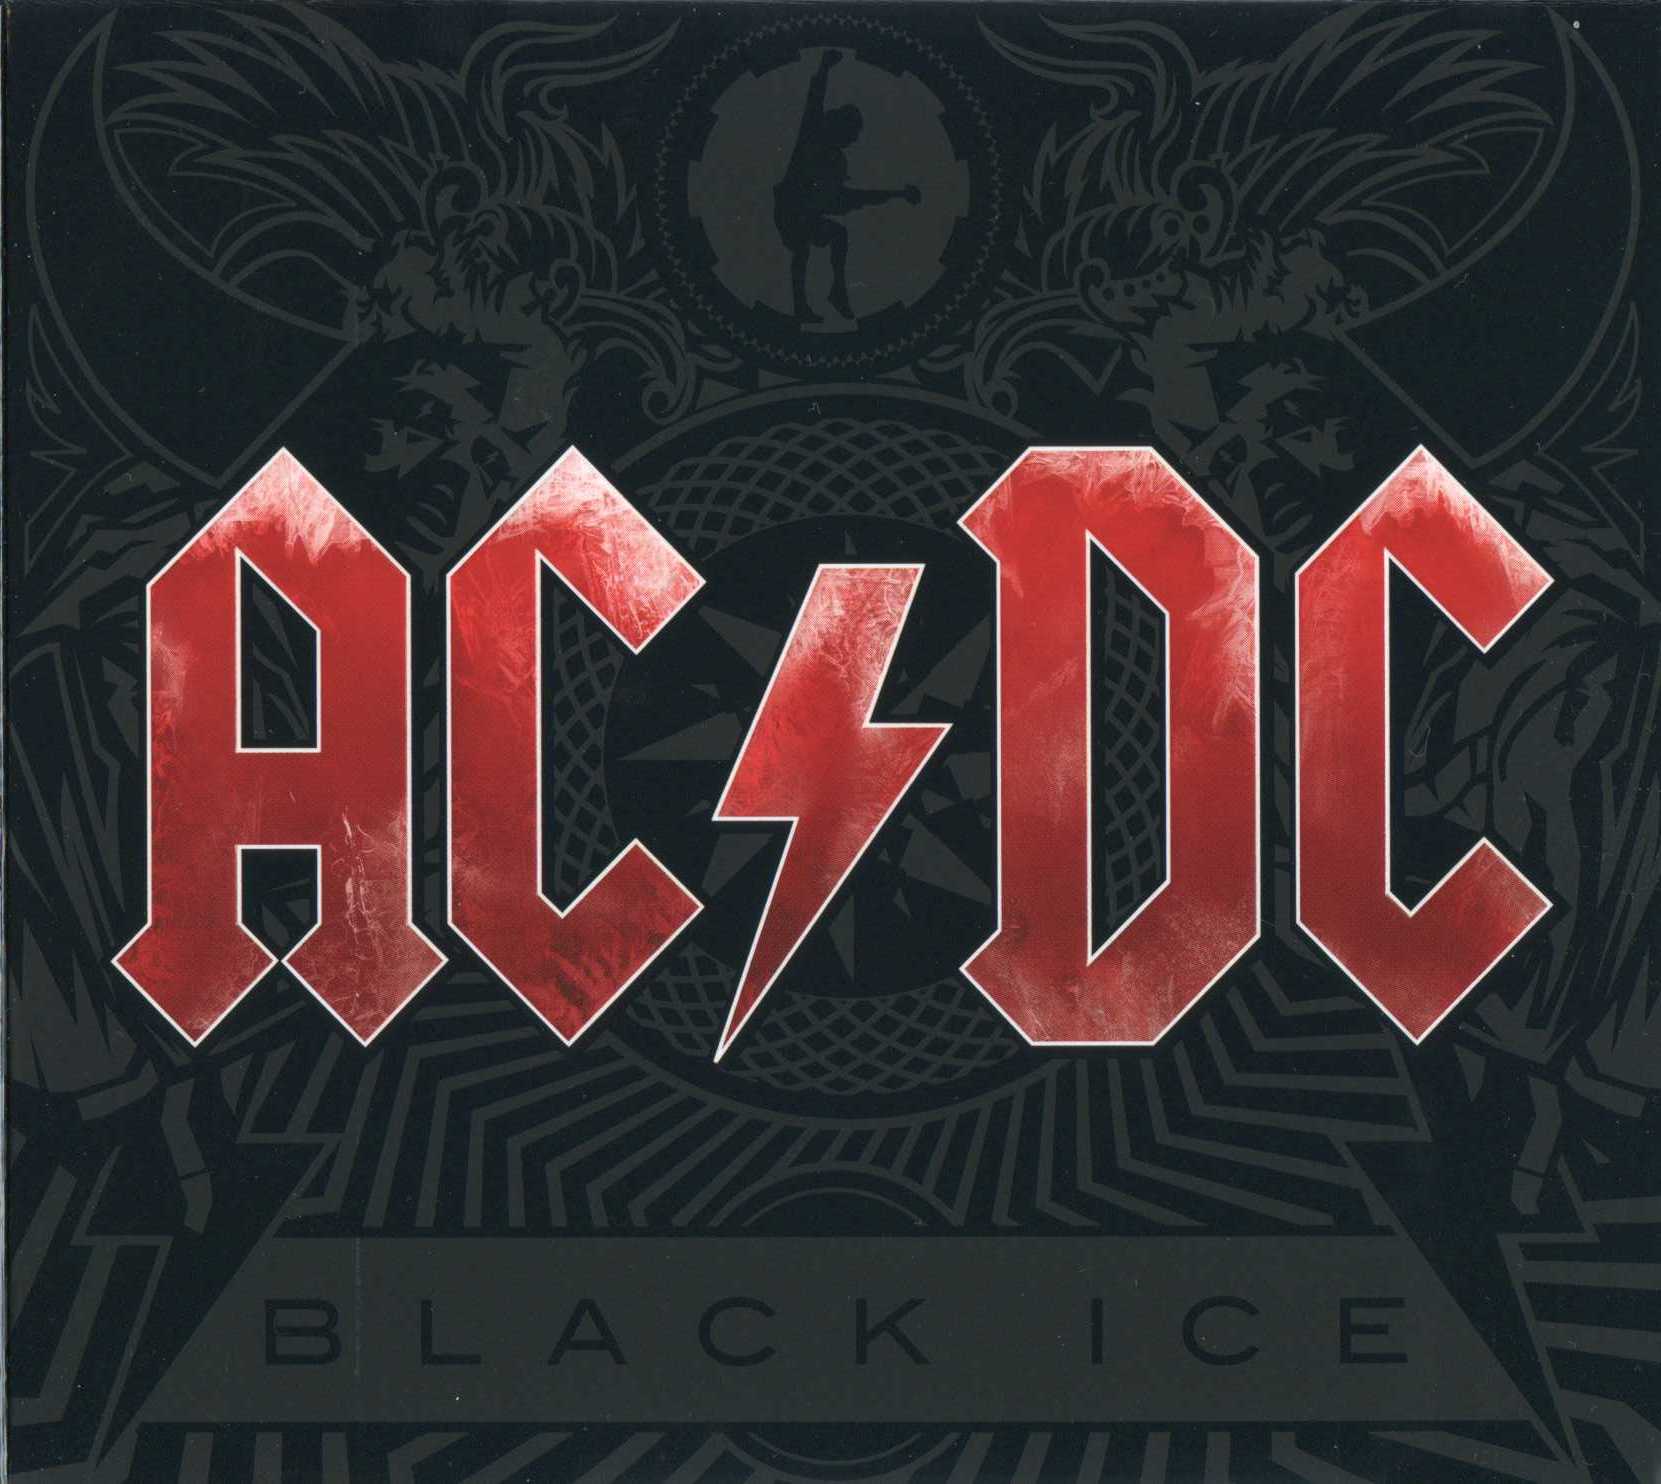 ซีดีเพลง CD AC-DC 2008 - Black Ice,ในราคาพิเศษสุดเพียง159บาท